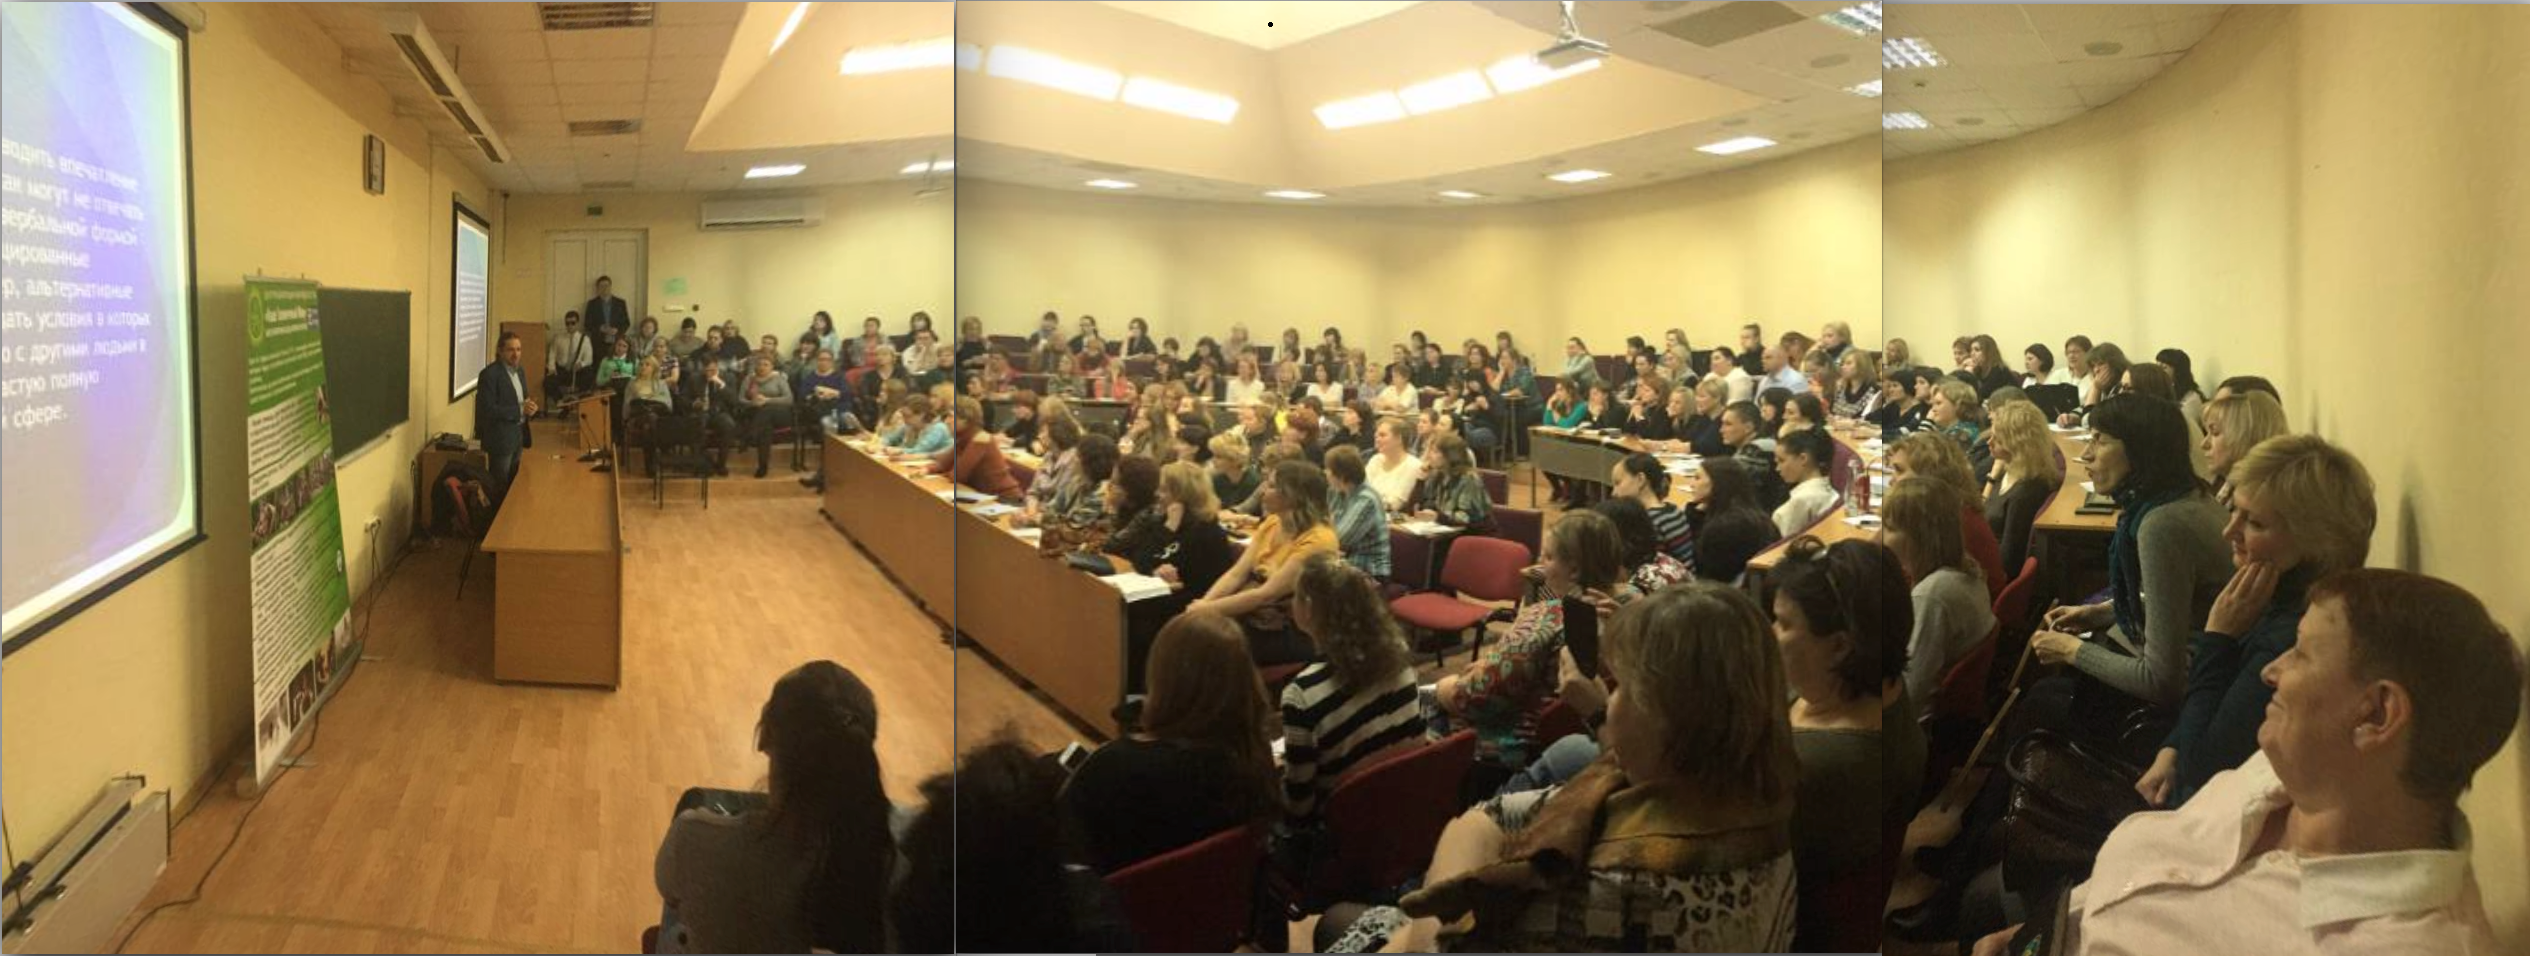 15 ноября в Центре прошёл очный вводный семинар для 150 специалистов социального обслуживания Московской области